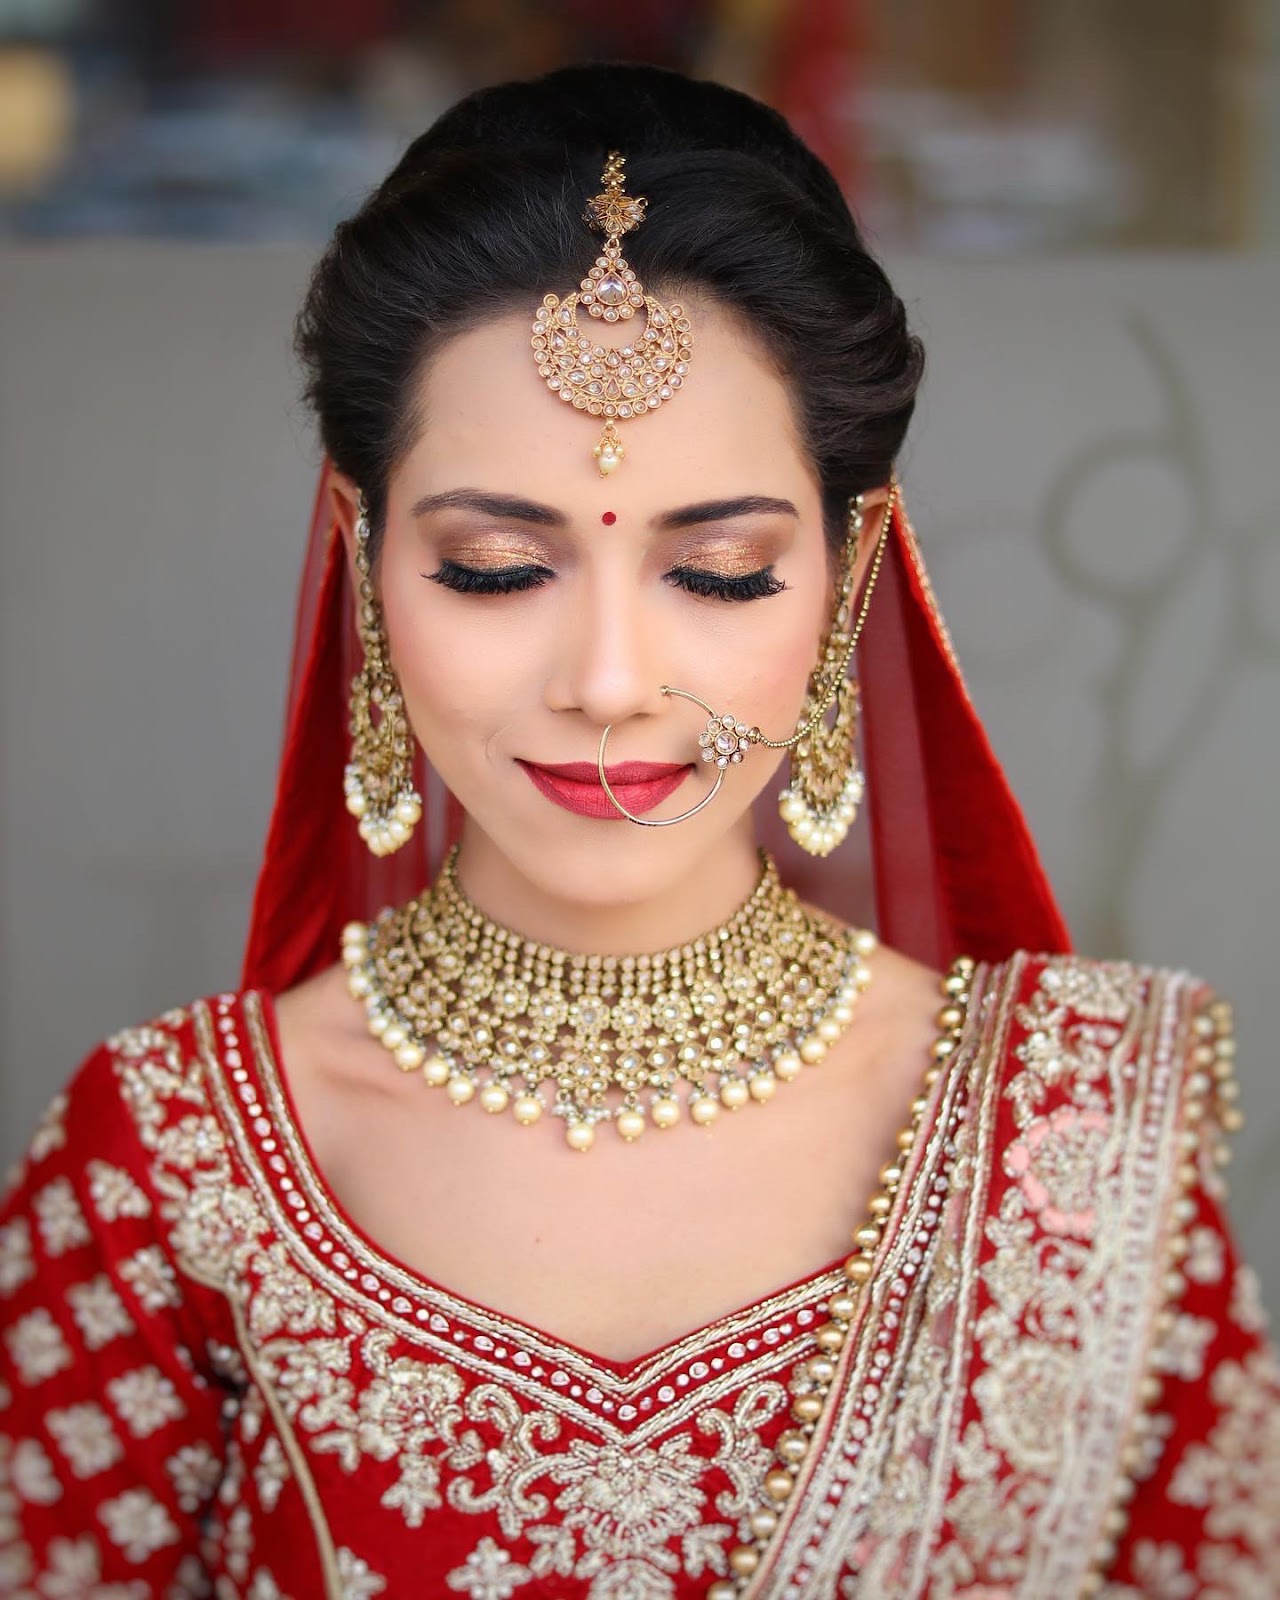 Punjabi style traditional wedding makeup - Village Barber Stories